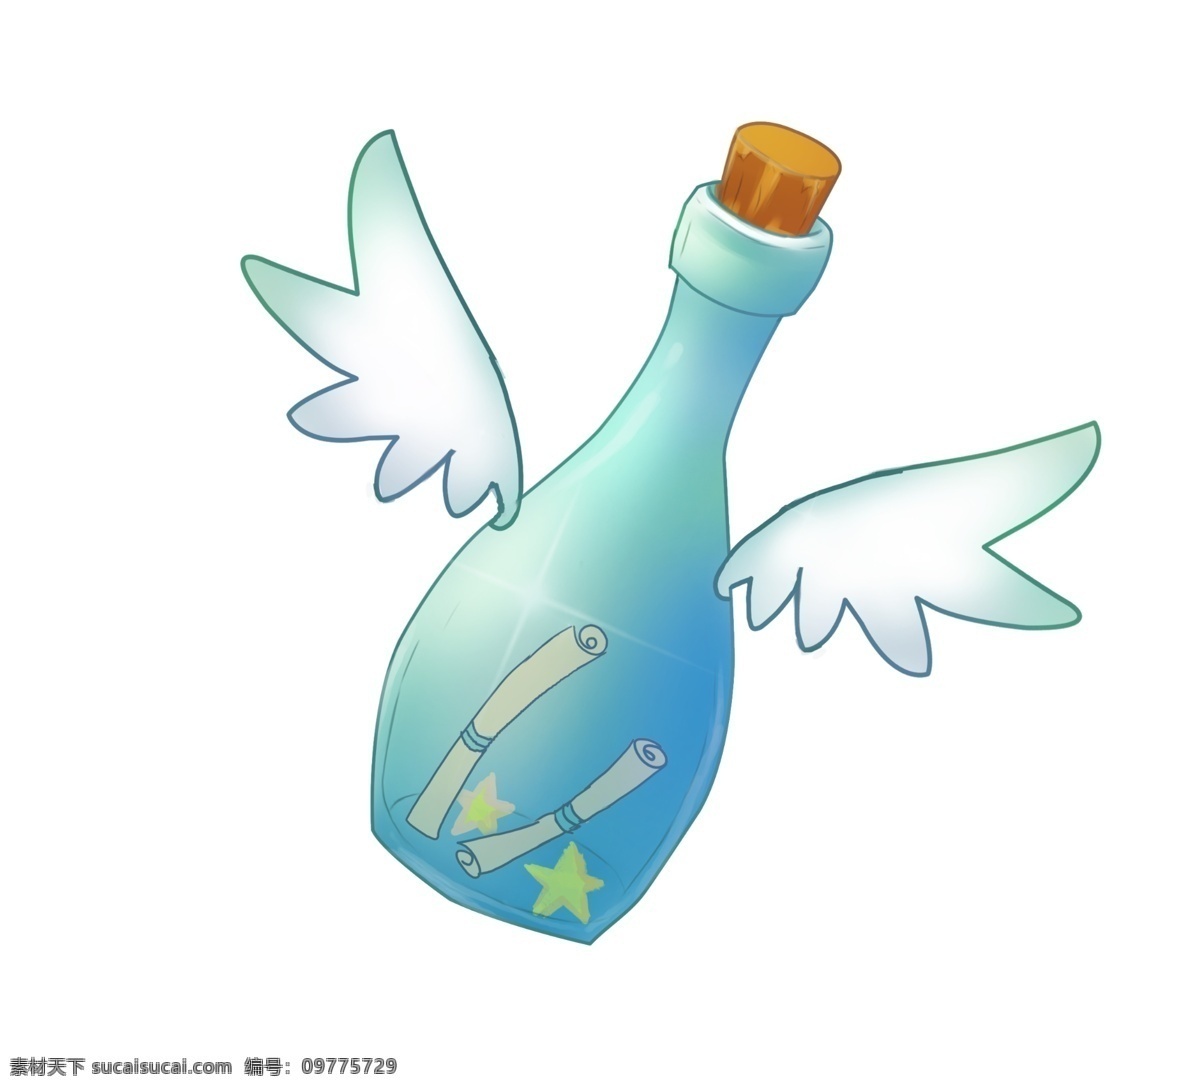 蓝色 翅膀 漂流 瓶 插画 梦幻漂流瓶 蓝色漂流瓶 翅膀漂流瓶 天使漂流瓶 带 蓝色翅膀